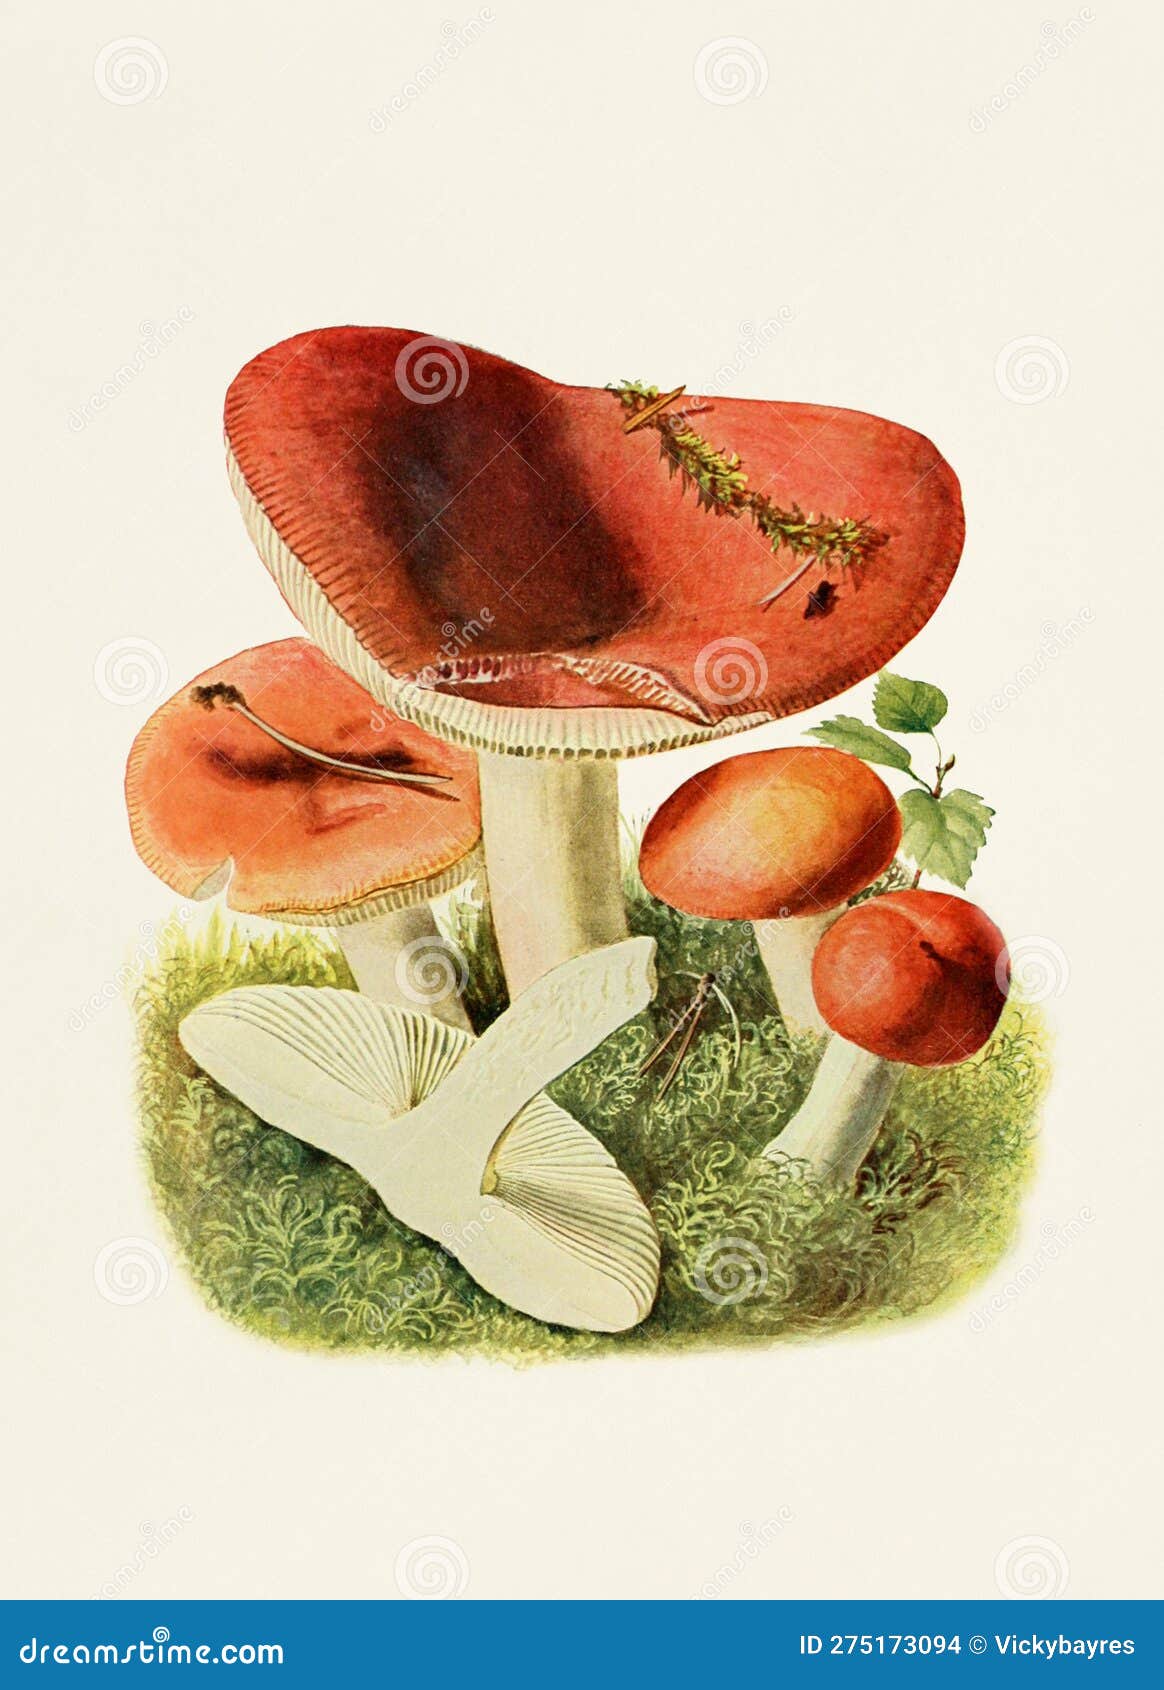 beautiful mushroom . russula emetica